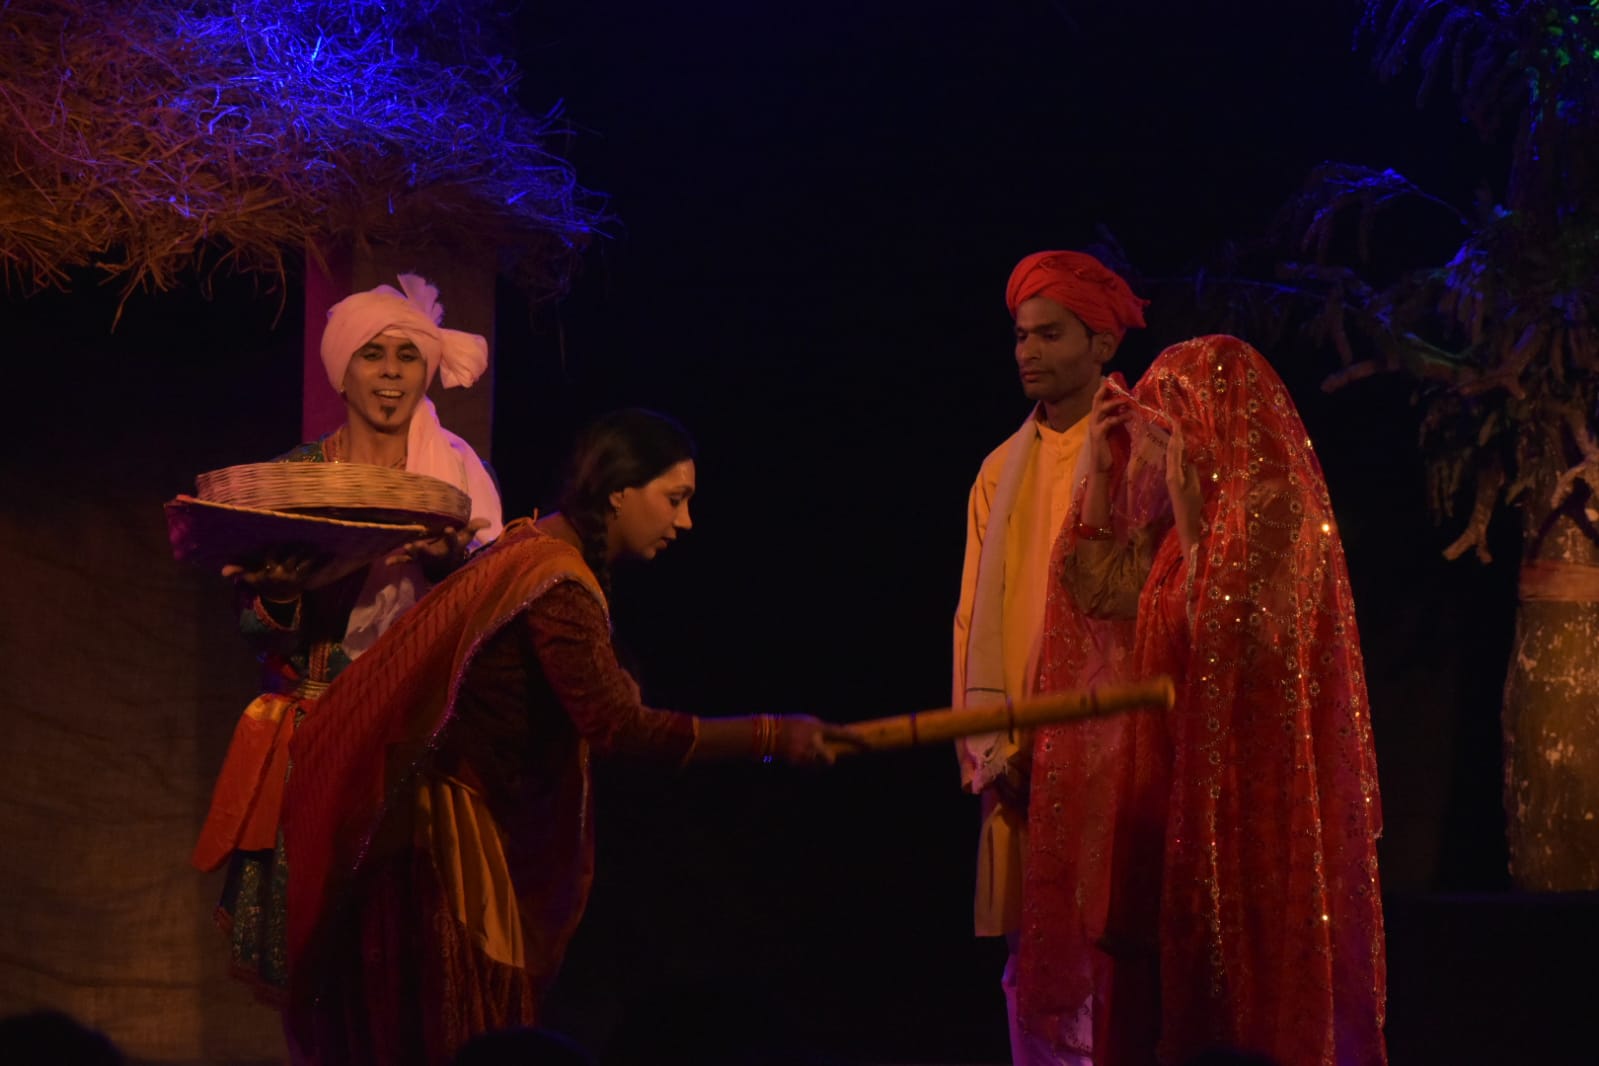 नाटक के लिए हिंदी विश्वविद्यालय के छात्रों ने एक माह तक सीखी भोजपुरी भाषा